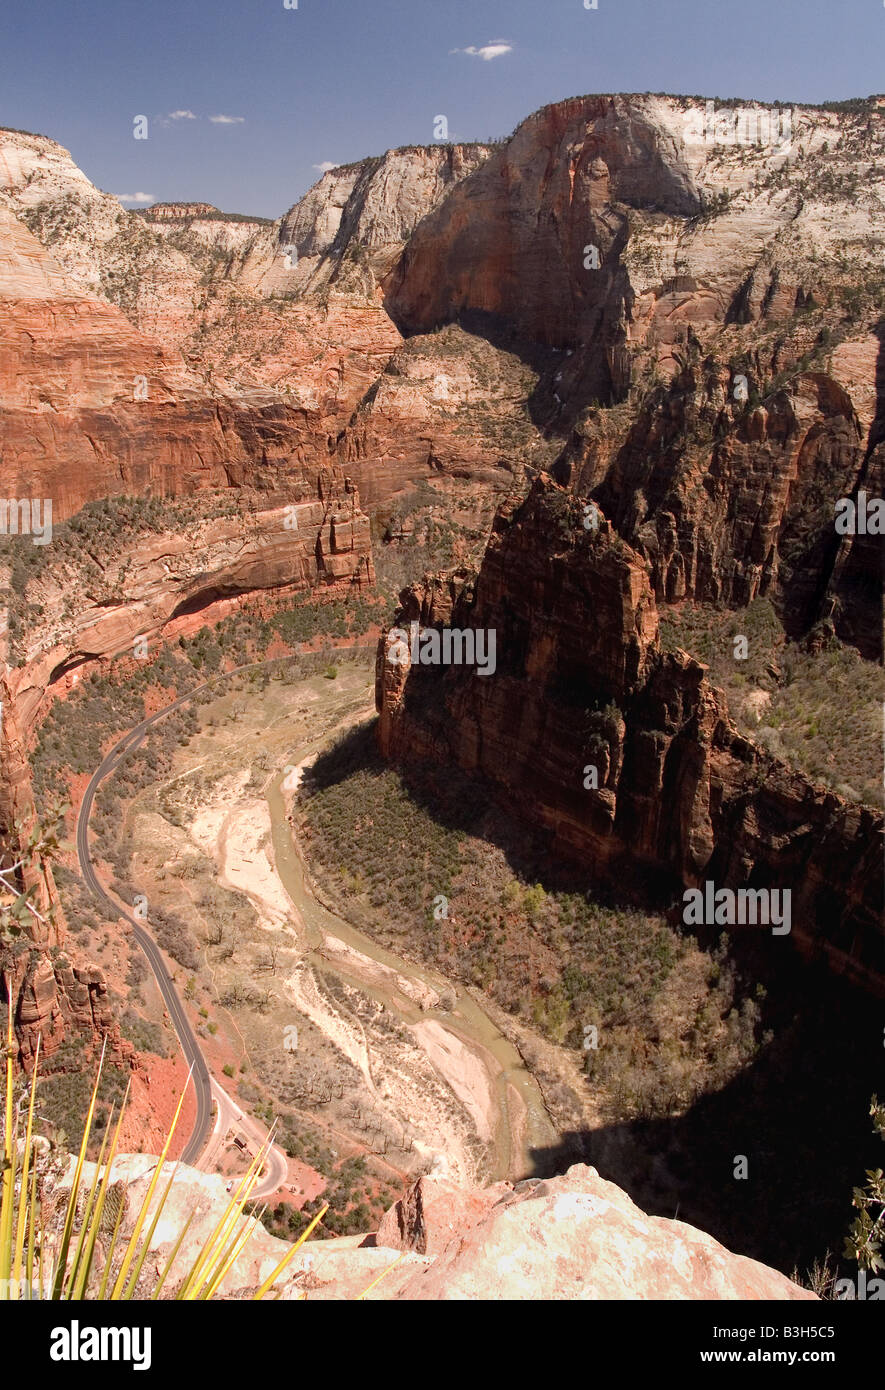 Angel's Landing mostra Zion Canyon. La vista in elevazione mostra la forcella del nord fiume vergine e la Strada Statale 9 sul fondovalle. Foto Stock